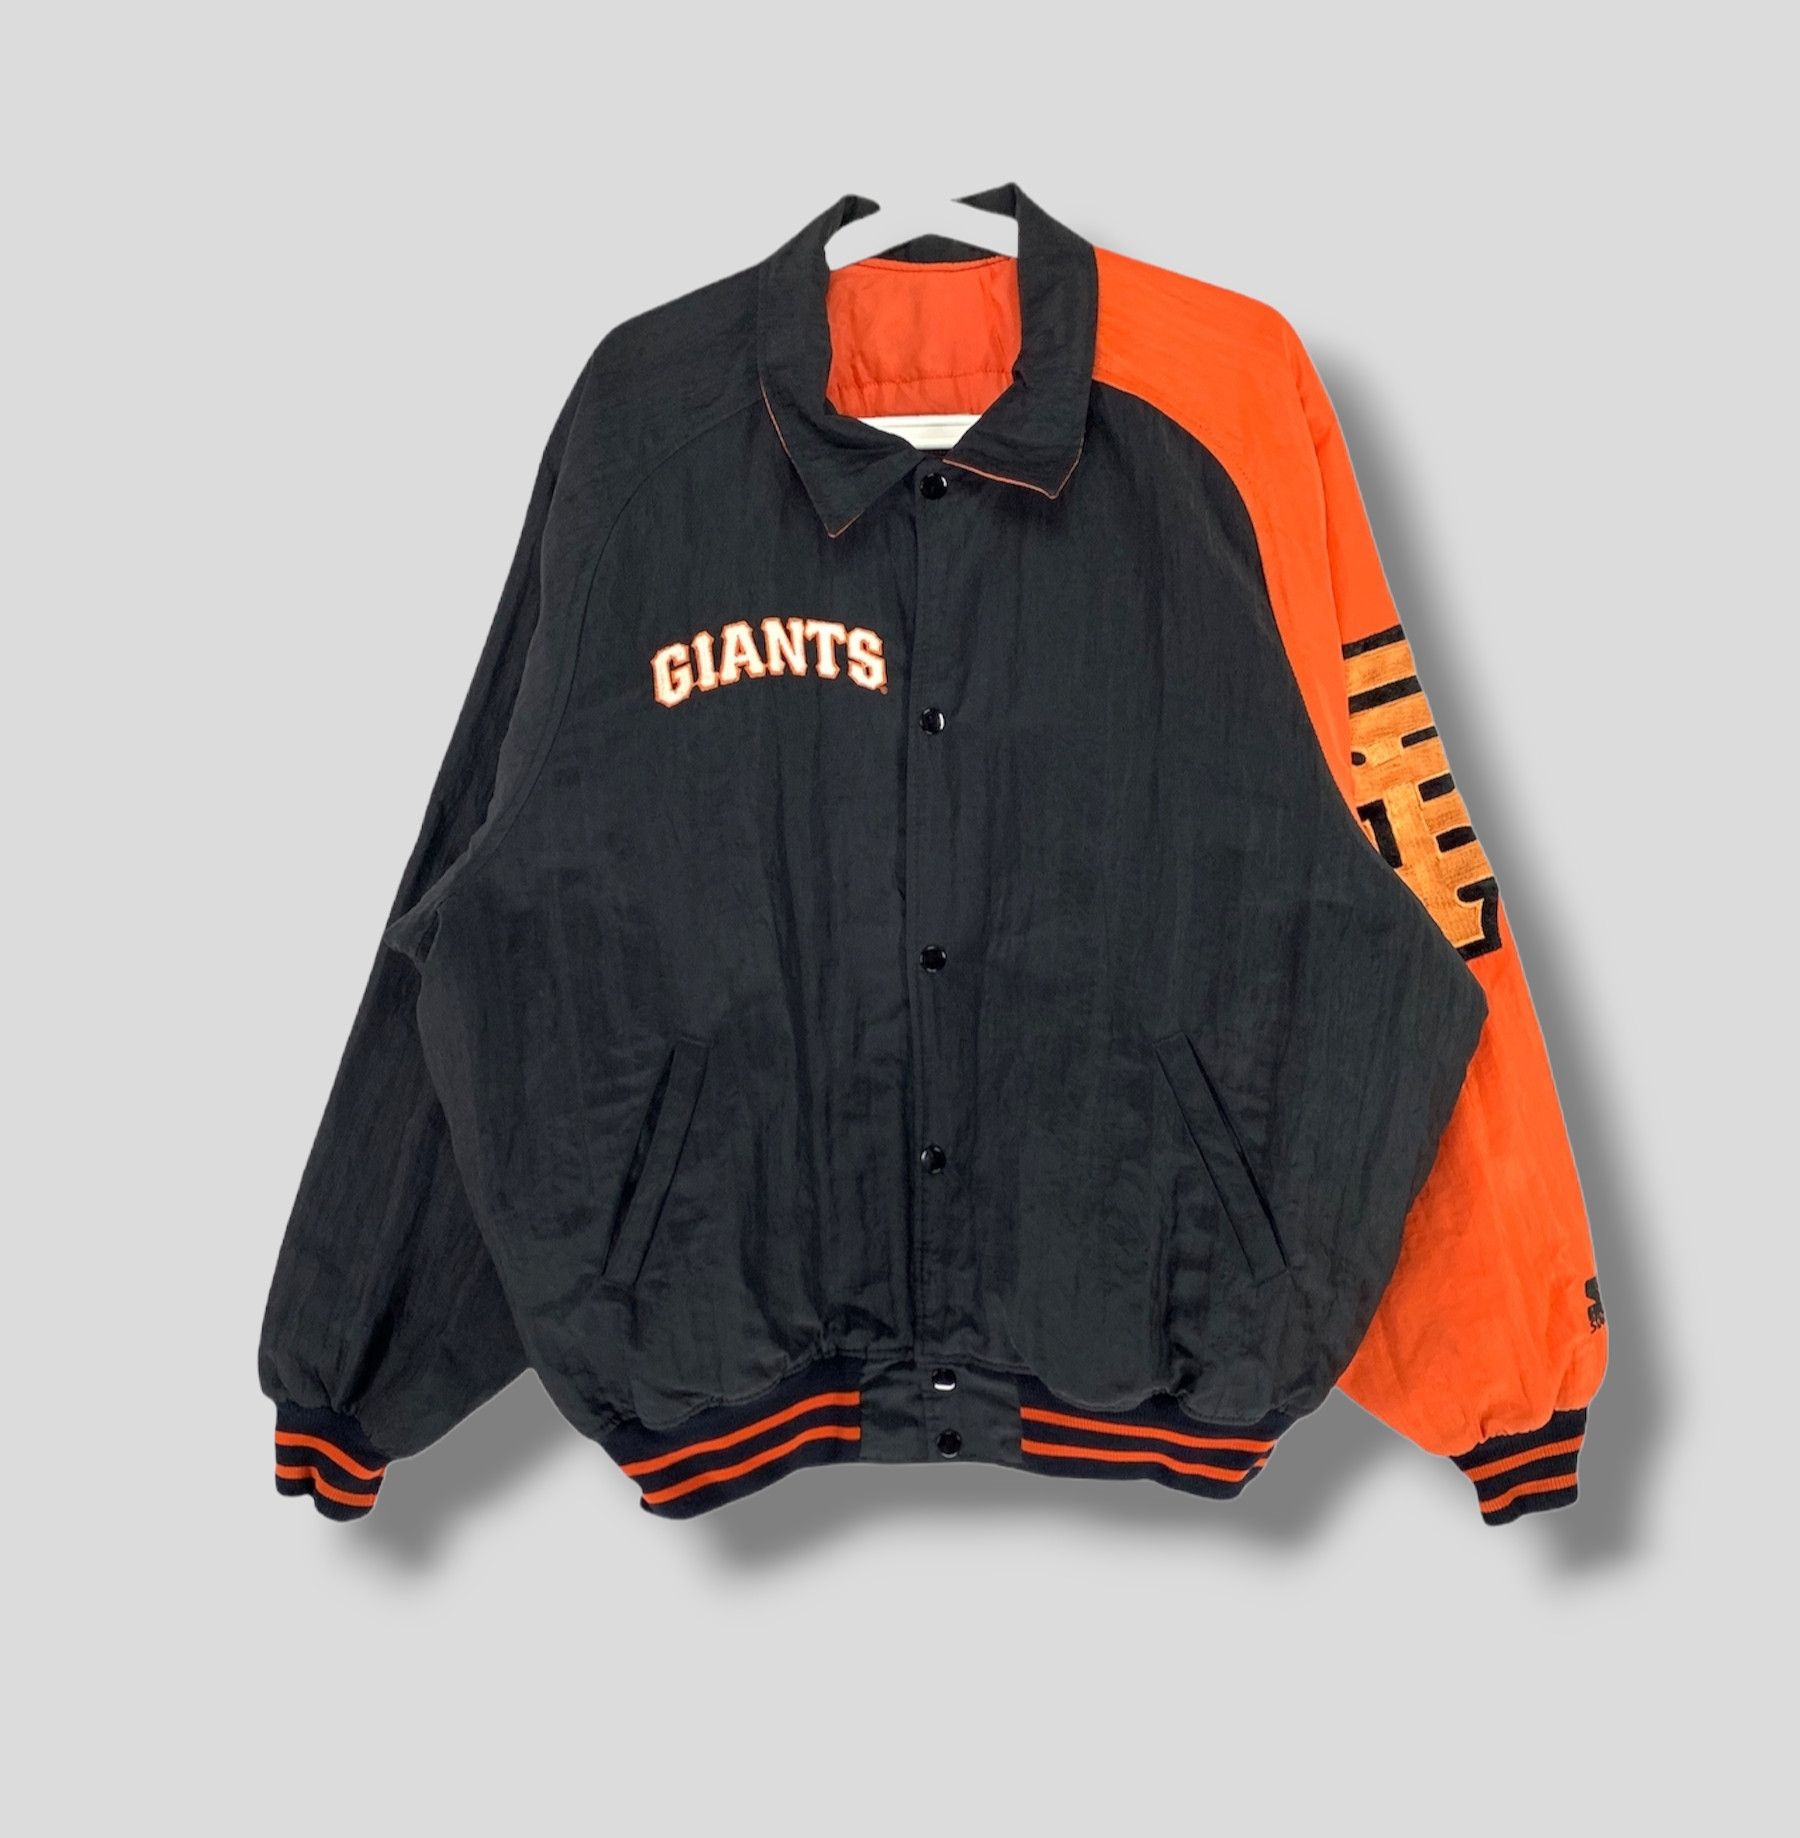 Vintage Vintage starter San francisco giants logo baseball jacket